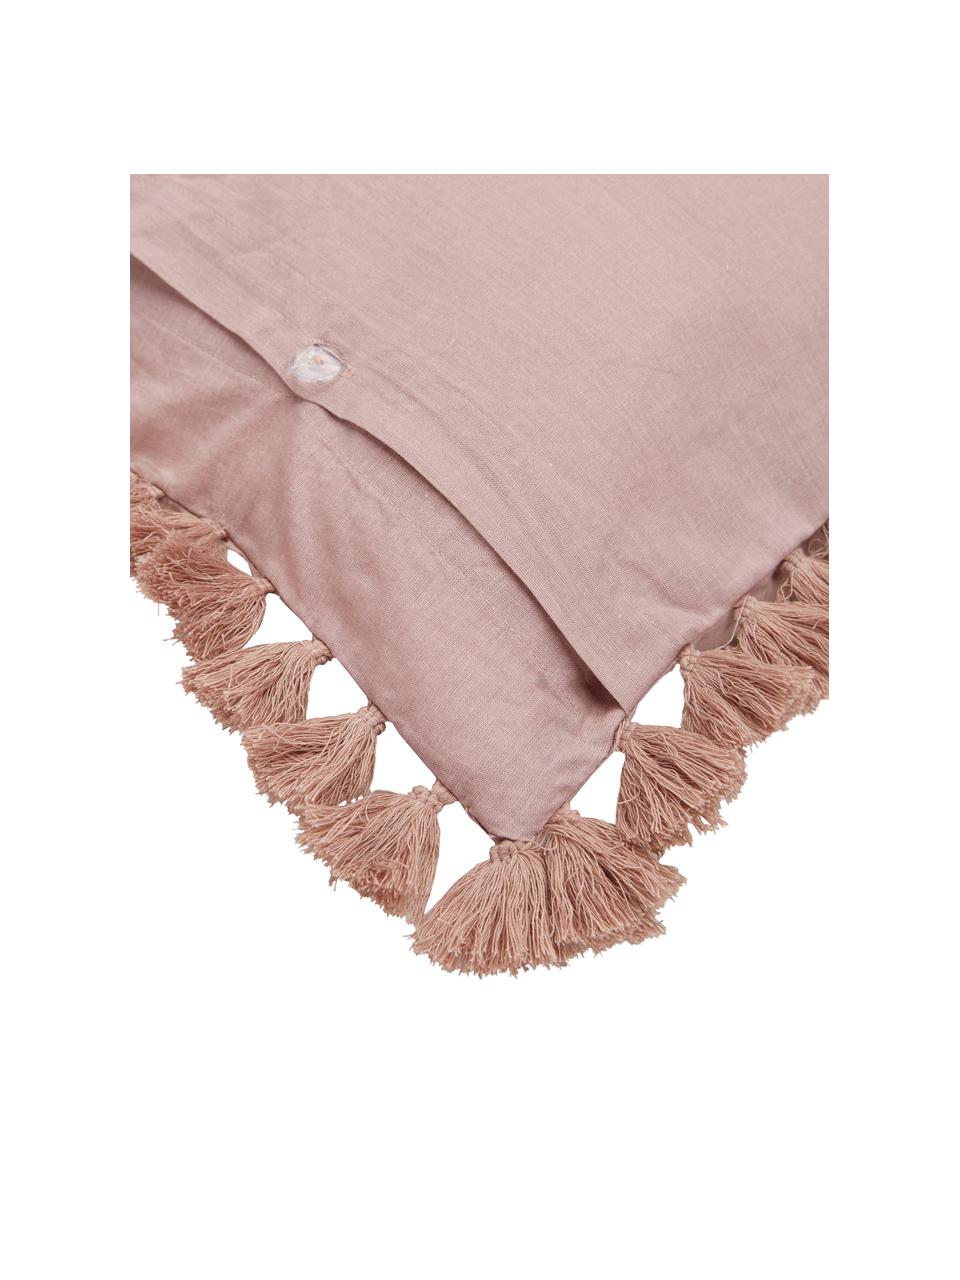 Poszewka na poduszkę z bawełny z chwostami Polly, 2 szt., Brudny różowy, S 40 x D 80 cm